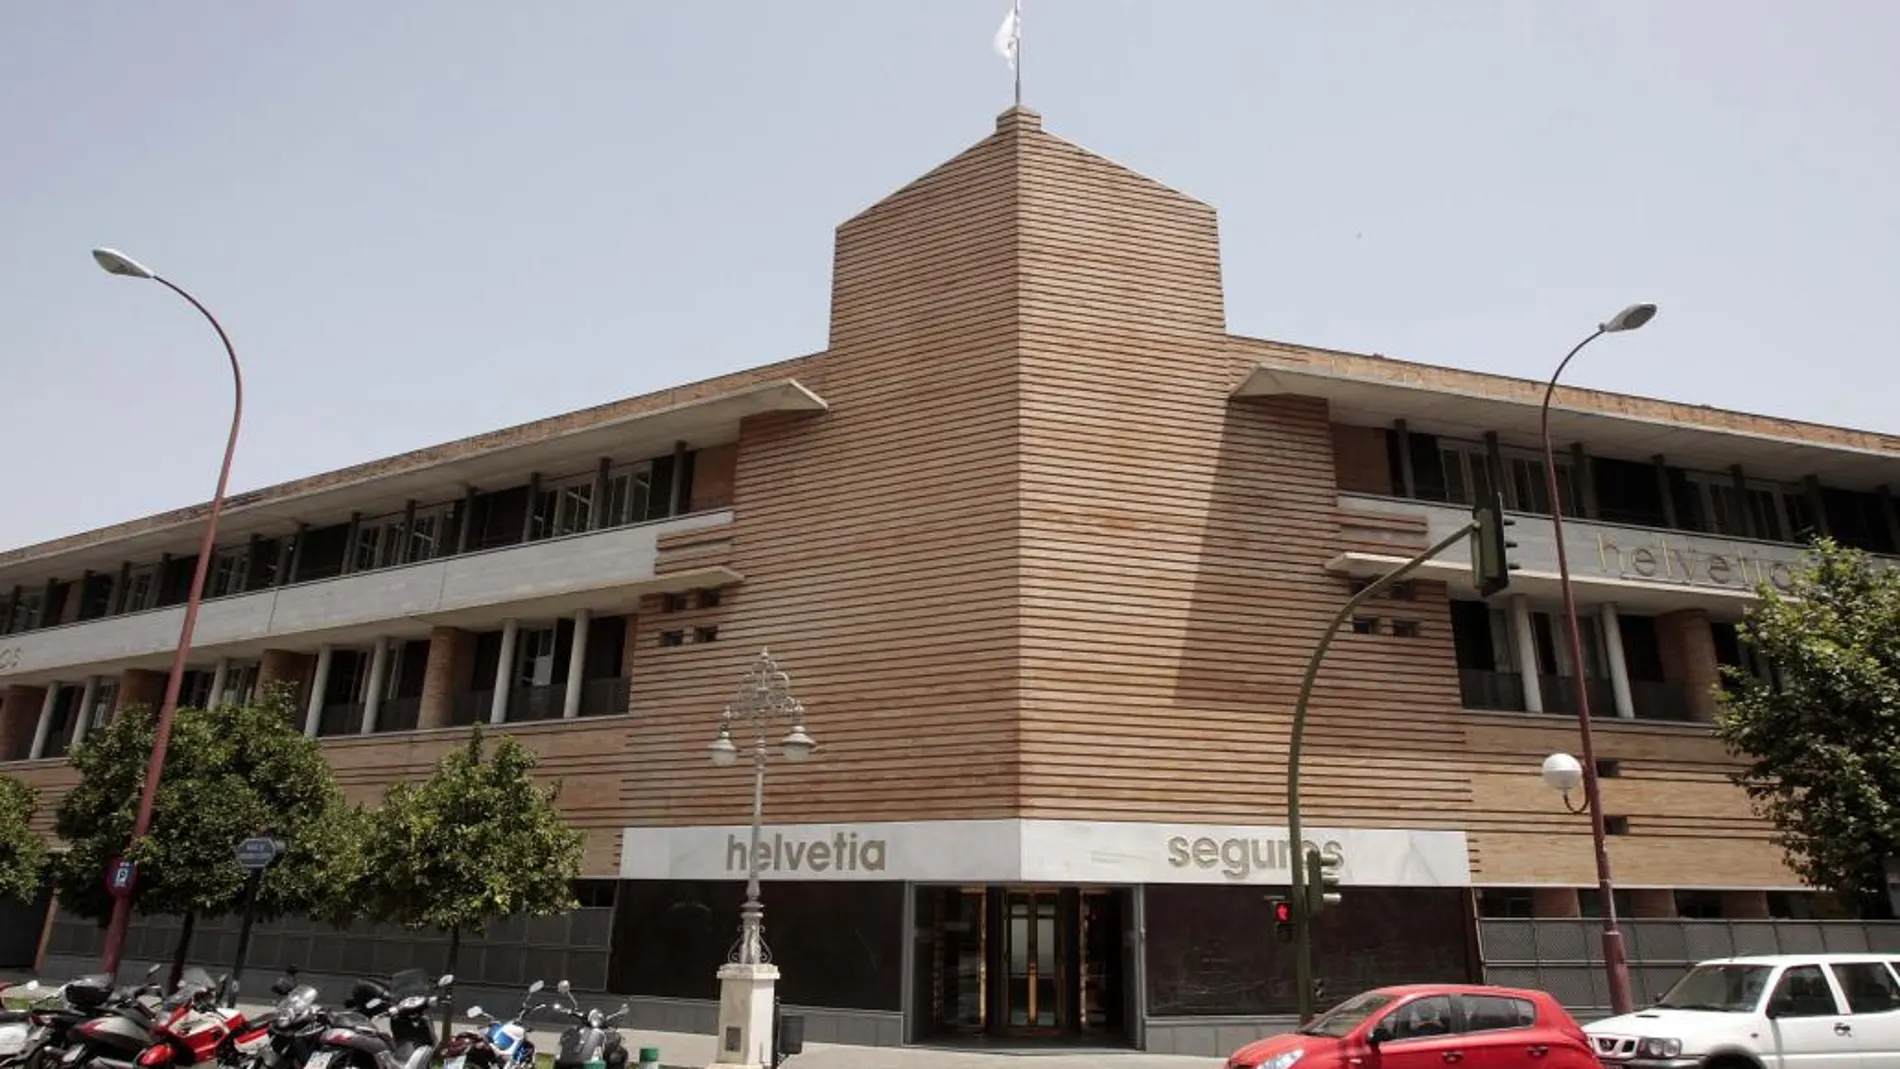 El edificio Helvetia, en Sevilla